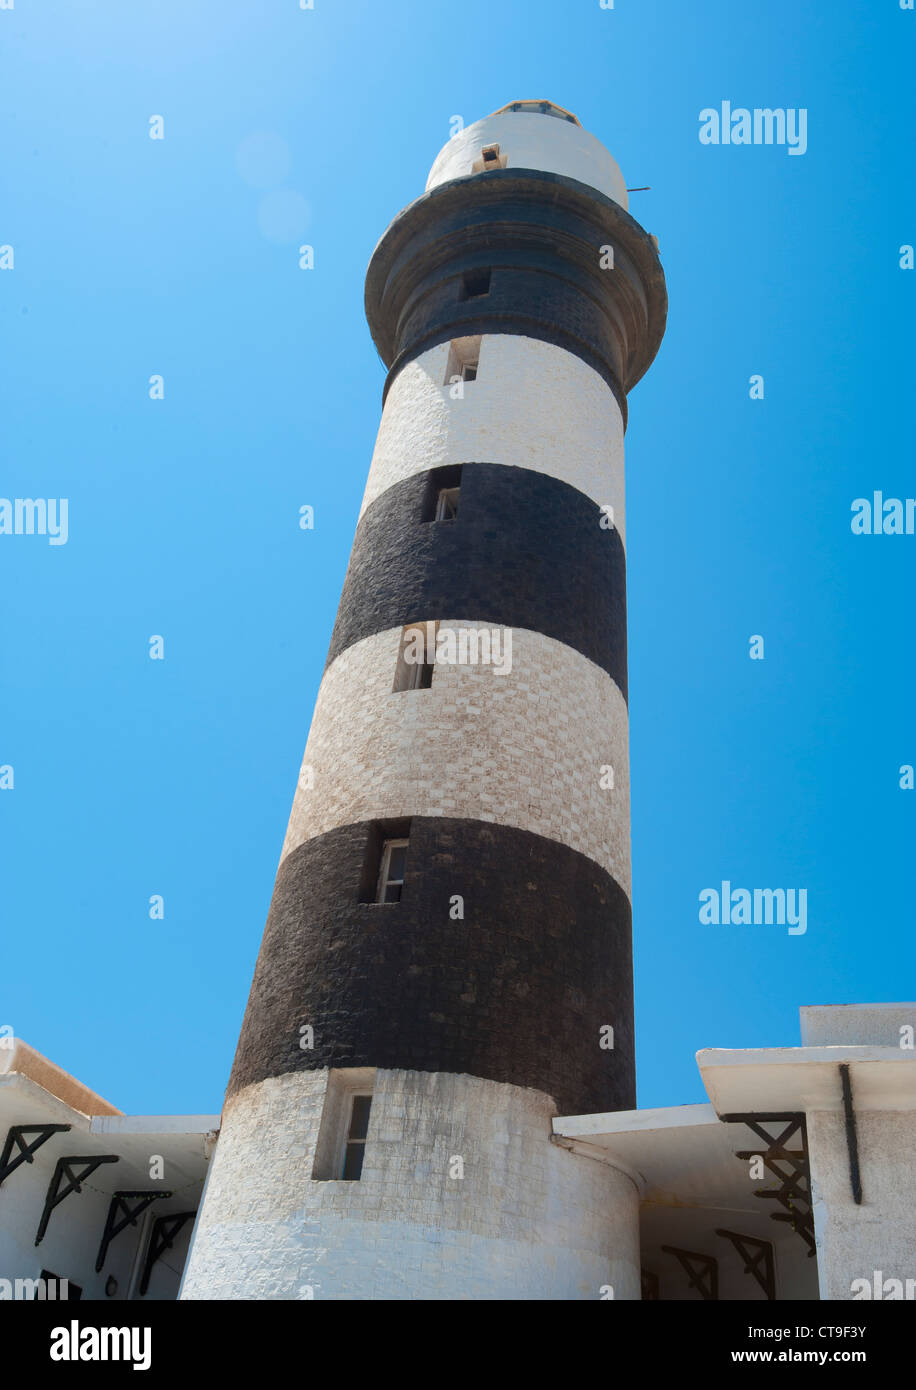 Schwarz und weiß gestreiften Turm eines Leuchtturms vor einem blauen Himmelshintergrund Stockfoto